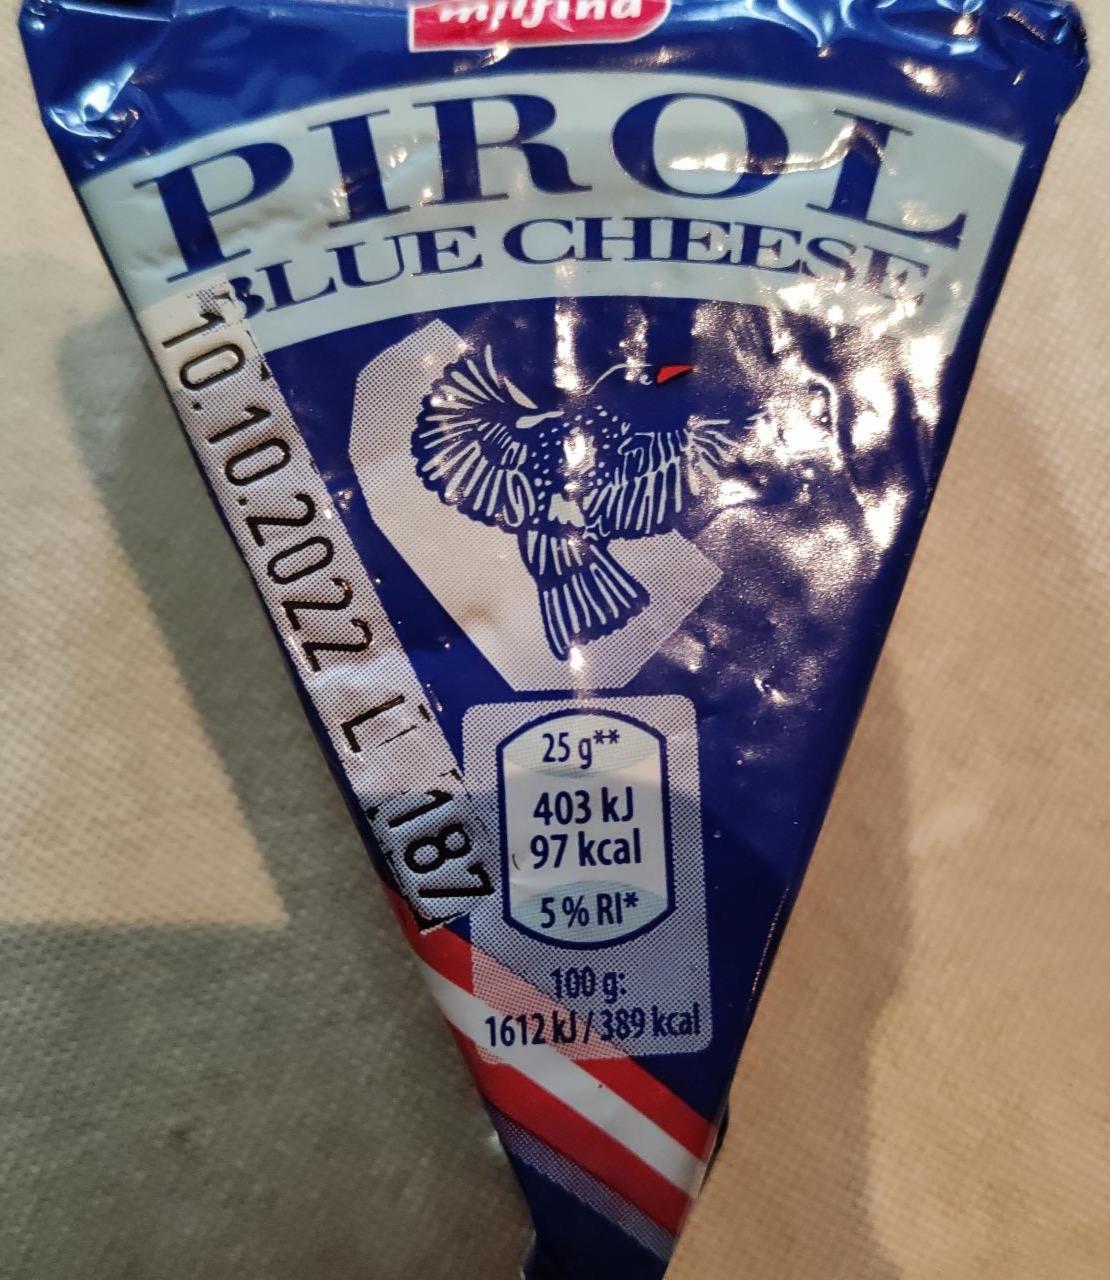 Képek - Pirol blue cheese Milfina